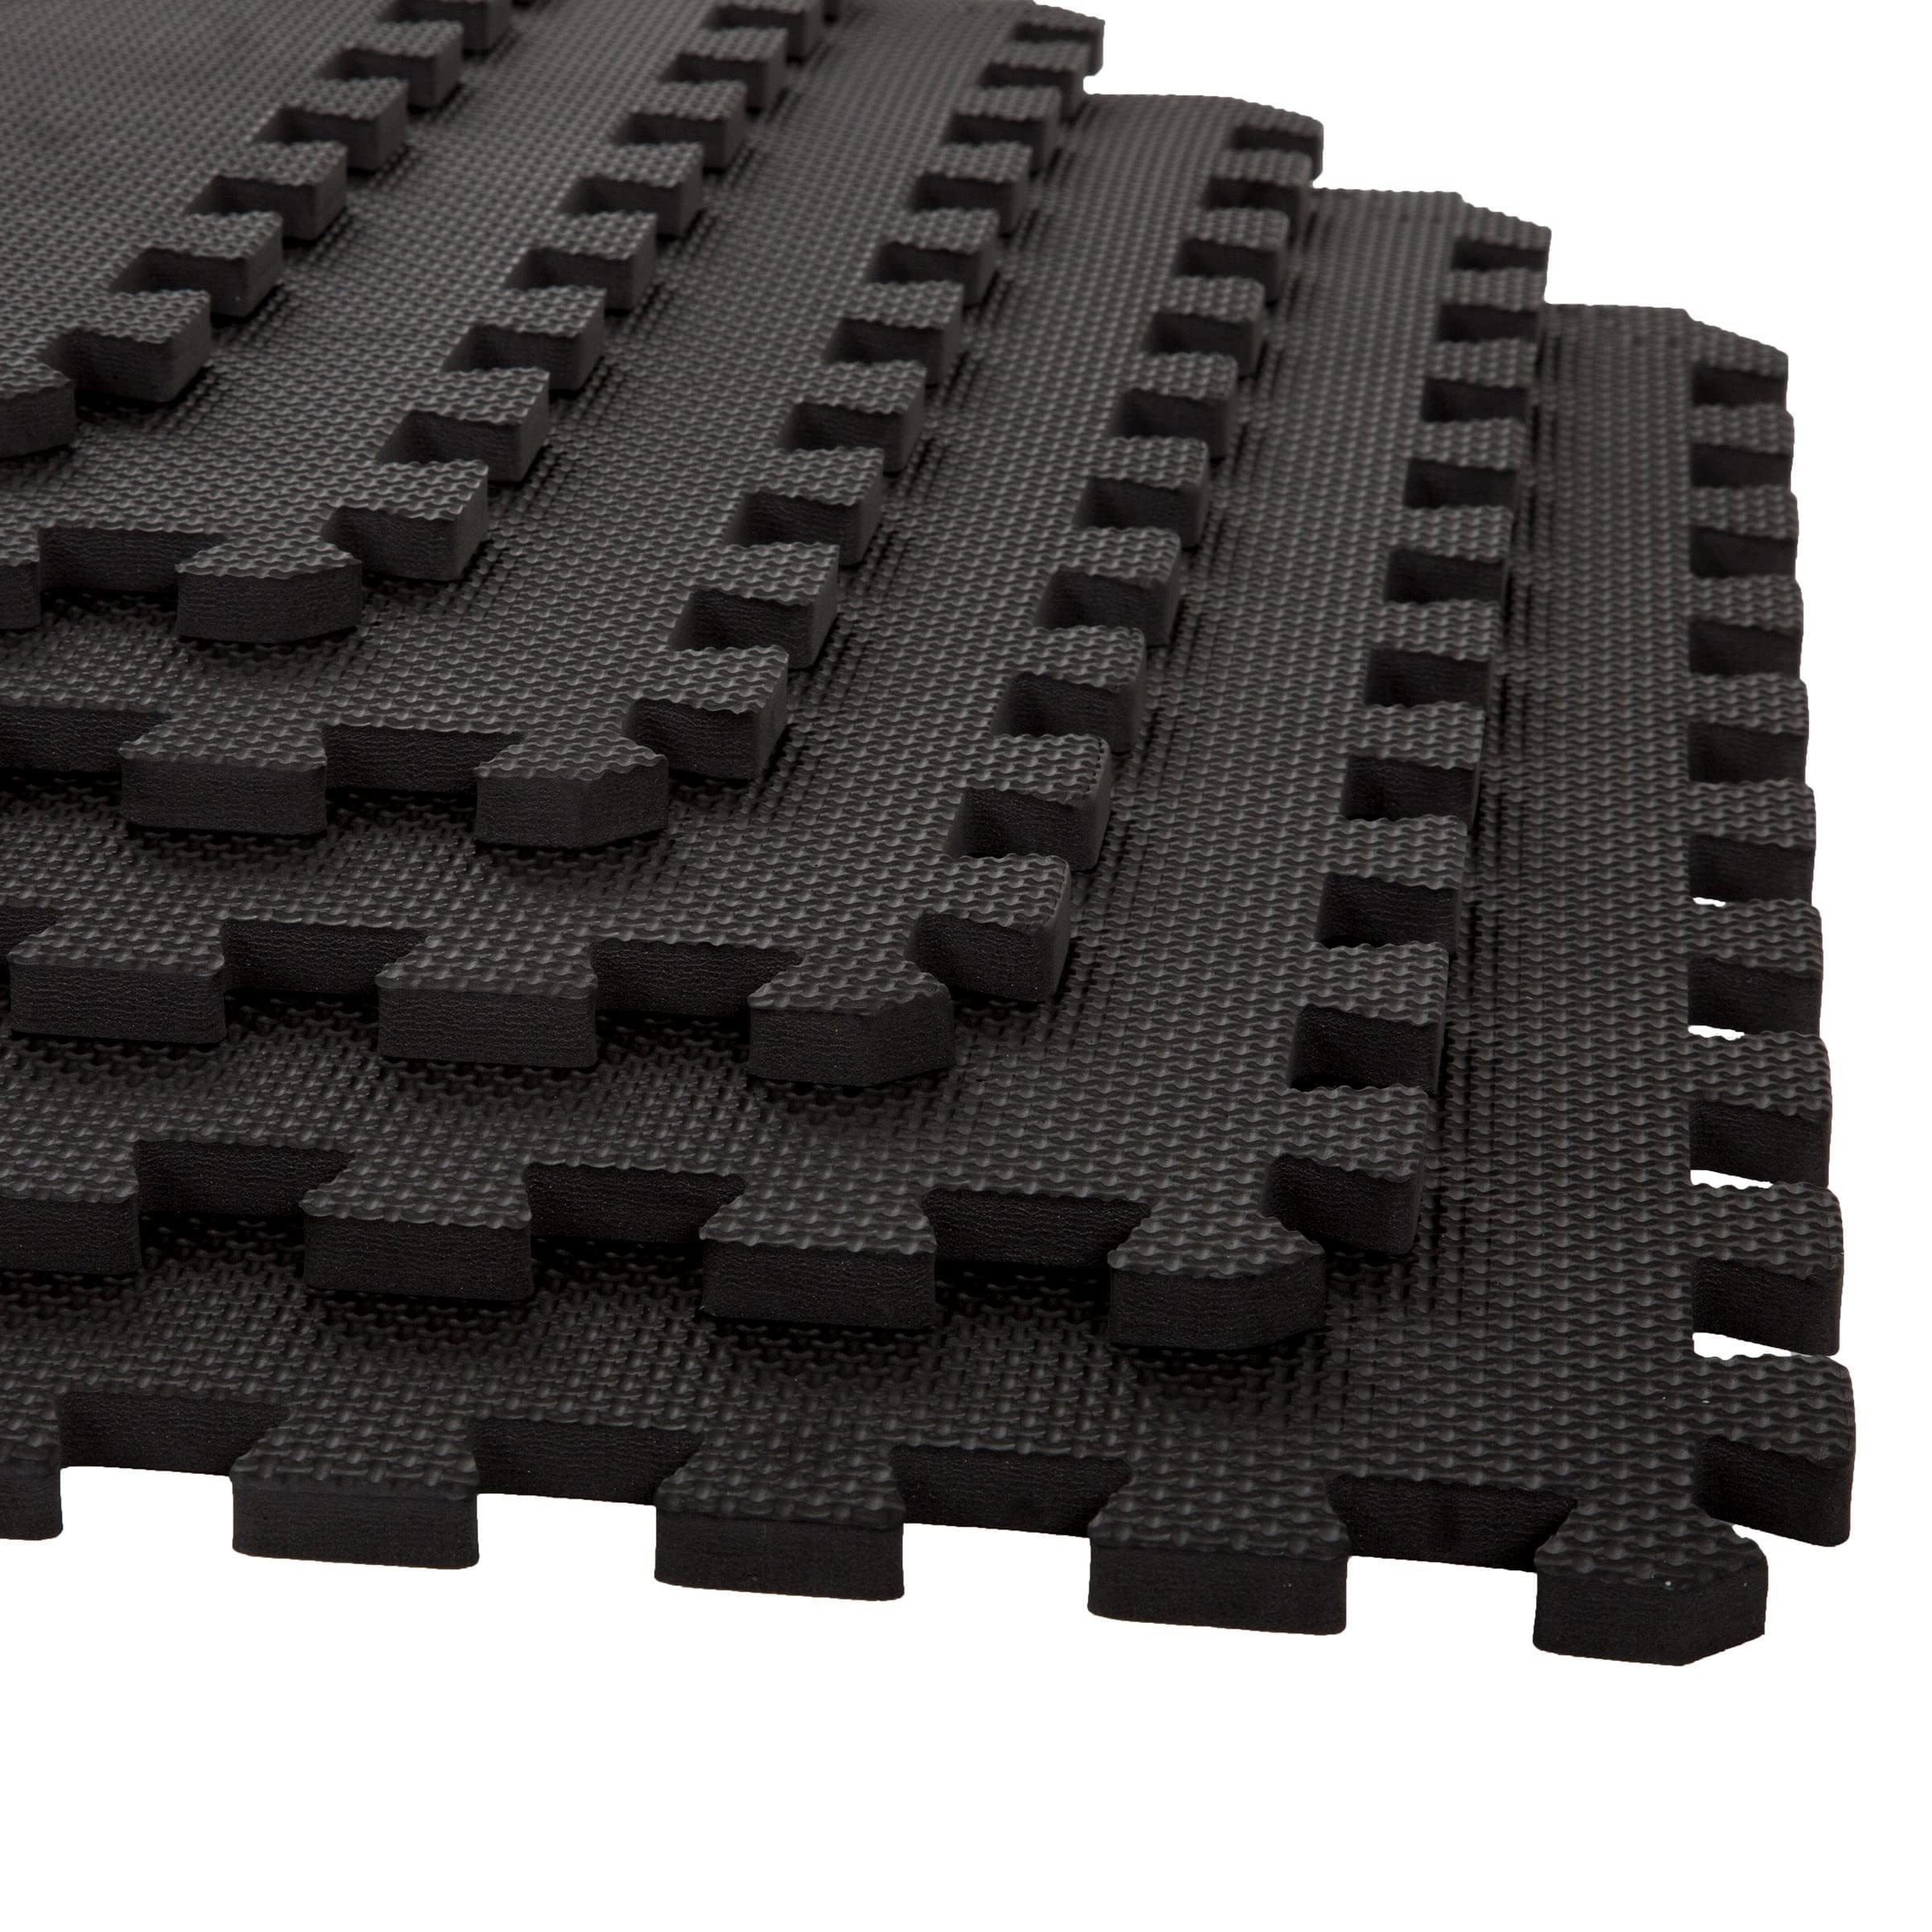 

60cm/24in Eva Foam Flooring Tiles, 6pcs Puzzle Pieces, Non-toxic Floor Padding For Playroom, Gym (black)